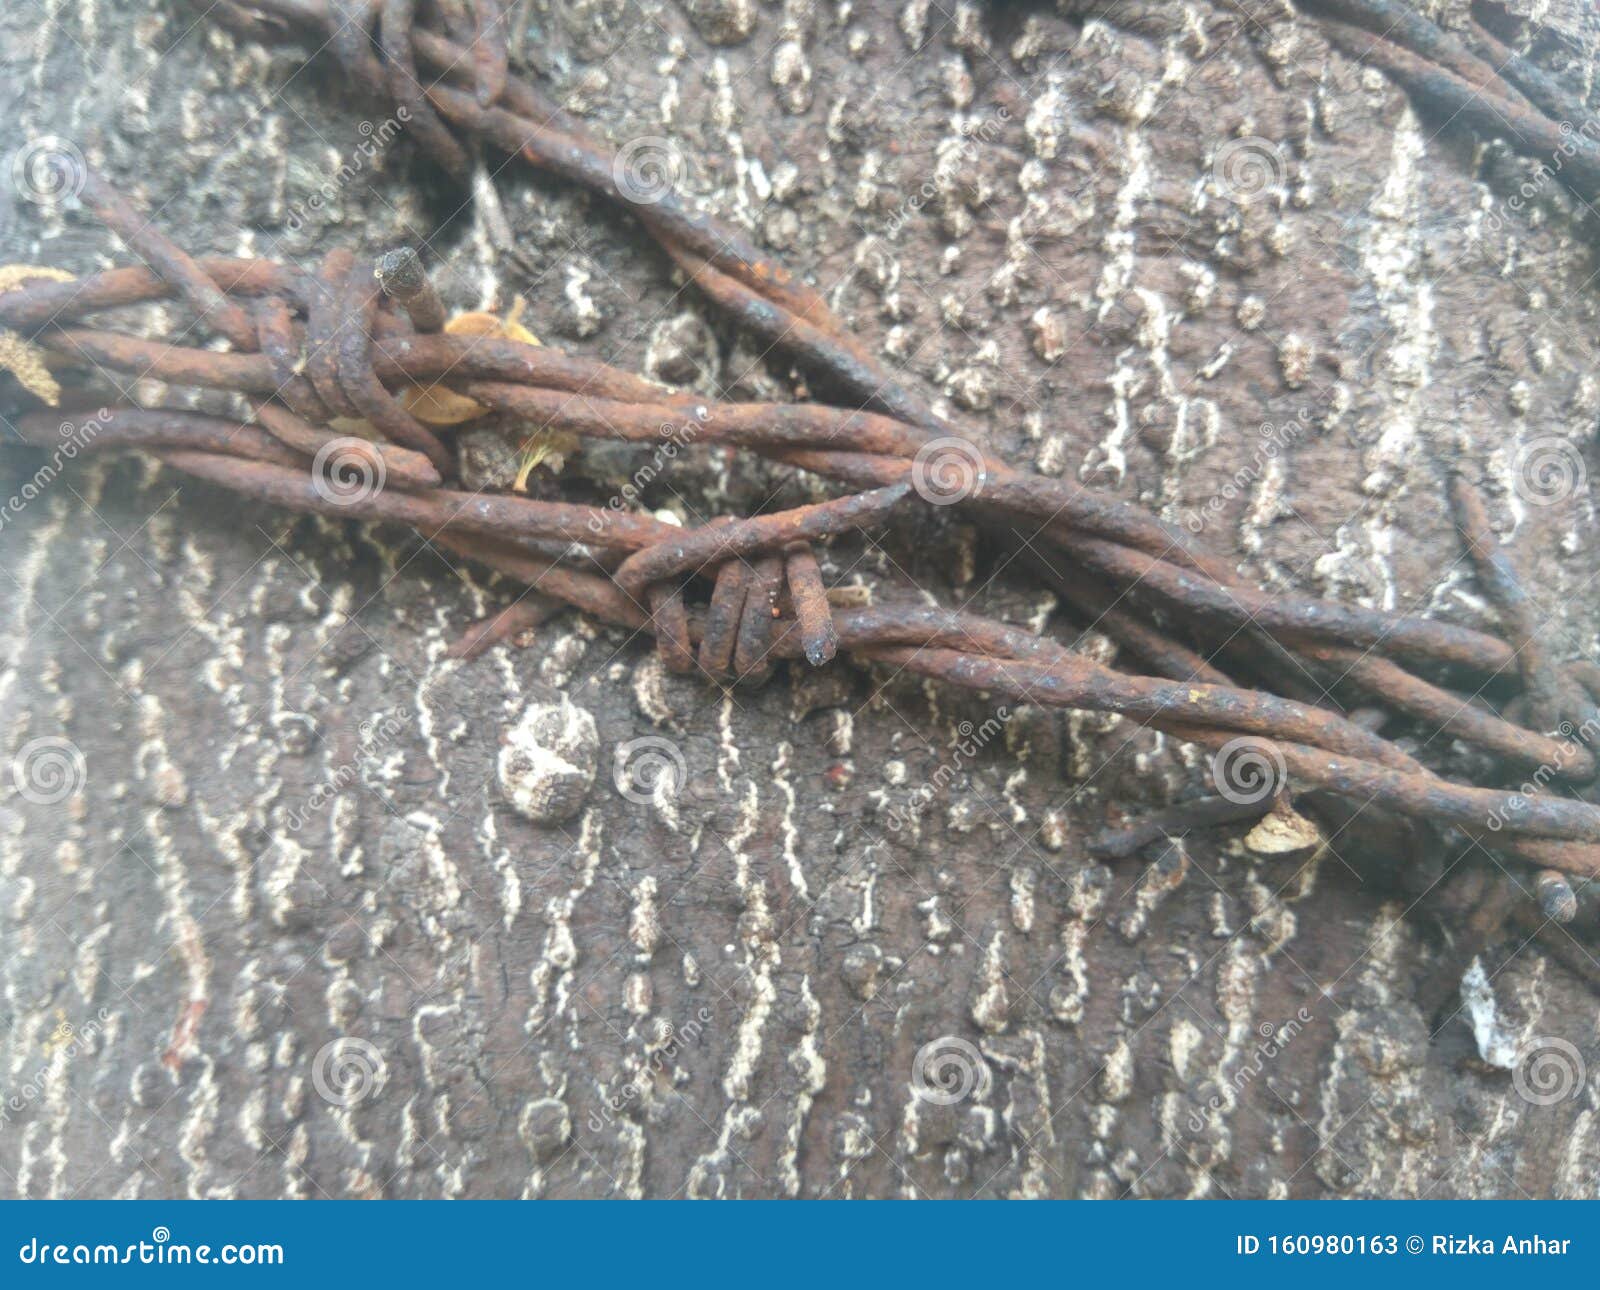 Σκουριασμένο συρματόπλεγμα στο δέντρο Στοκ Εικόνα - εικόνα από : 160980163